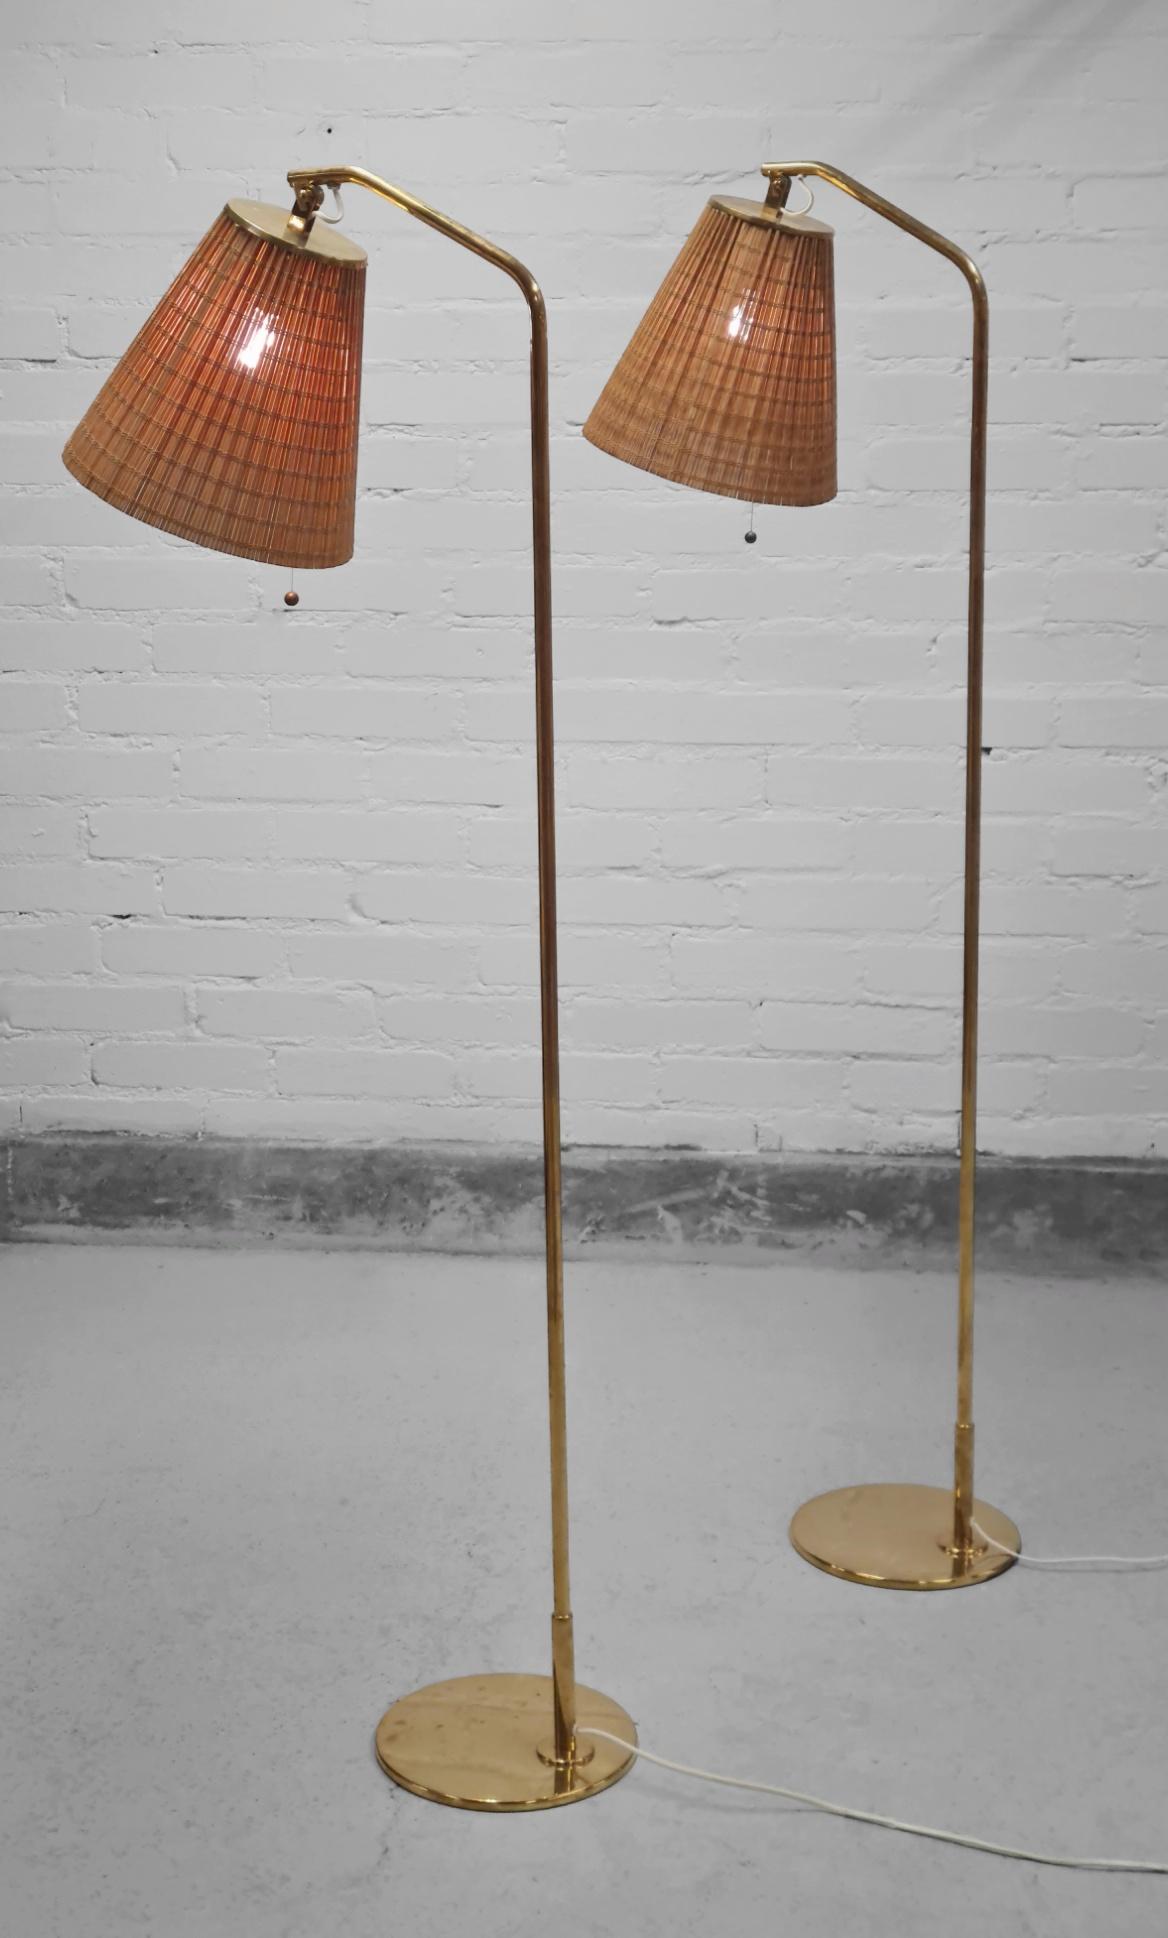 Ein elegantes Paar Stehlampen von Meisterdesigner Paavo Tynell. Diese minimalistischen Stehlampen Modell 9613 tragen Eleganz in ihrer Schlichtheit. Die Schirme sind verstellbar, was diese Lampen perfekt für Lesezimmer, Schlafzimmer oder